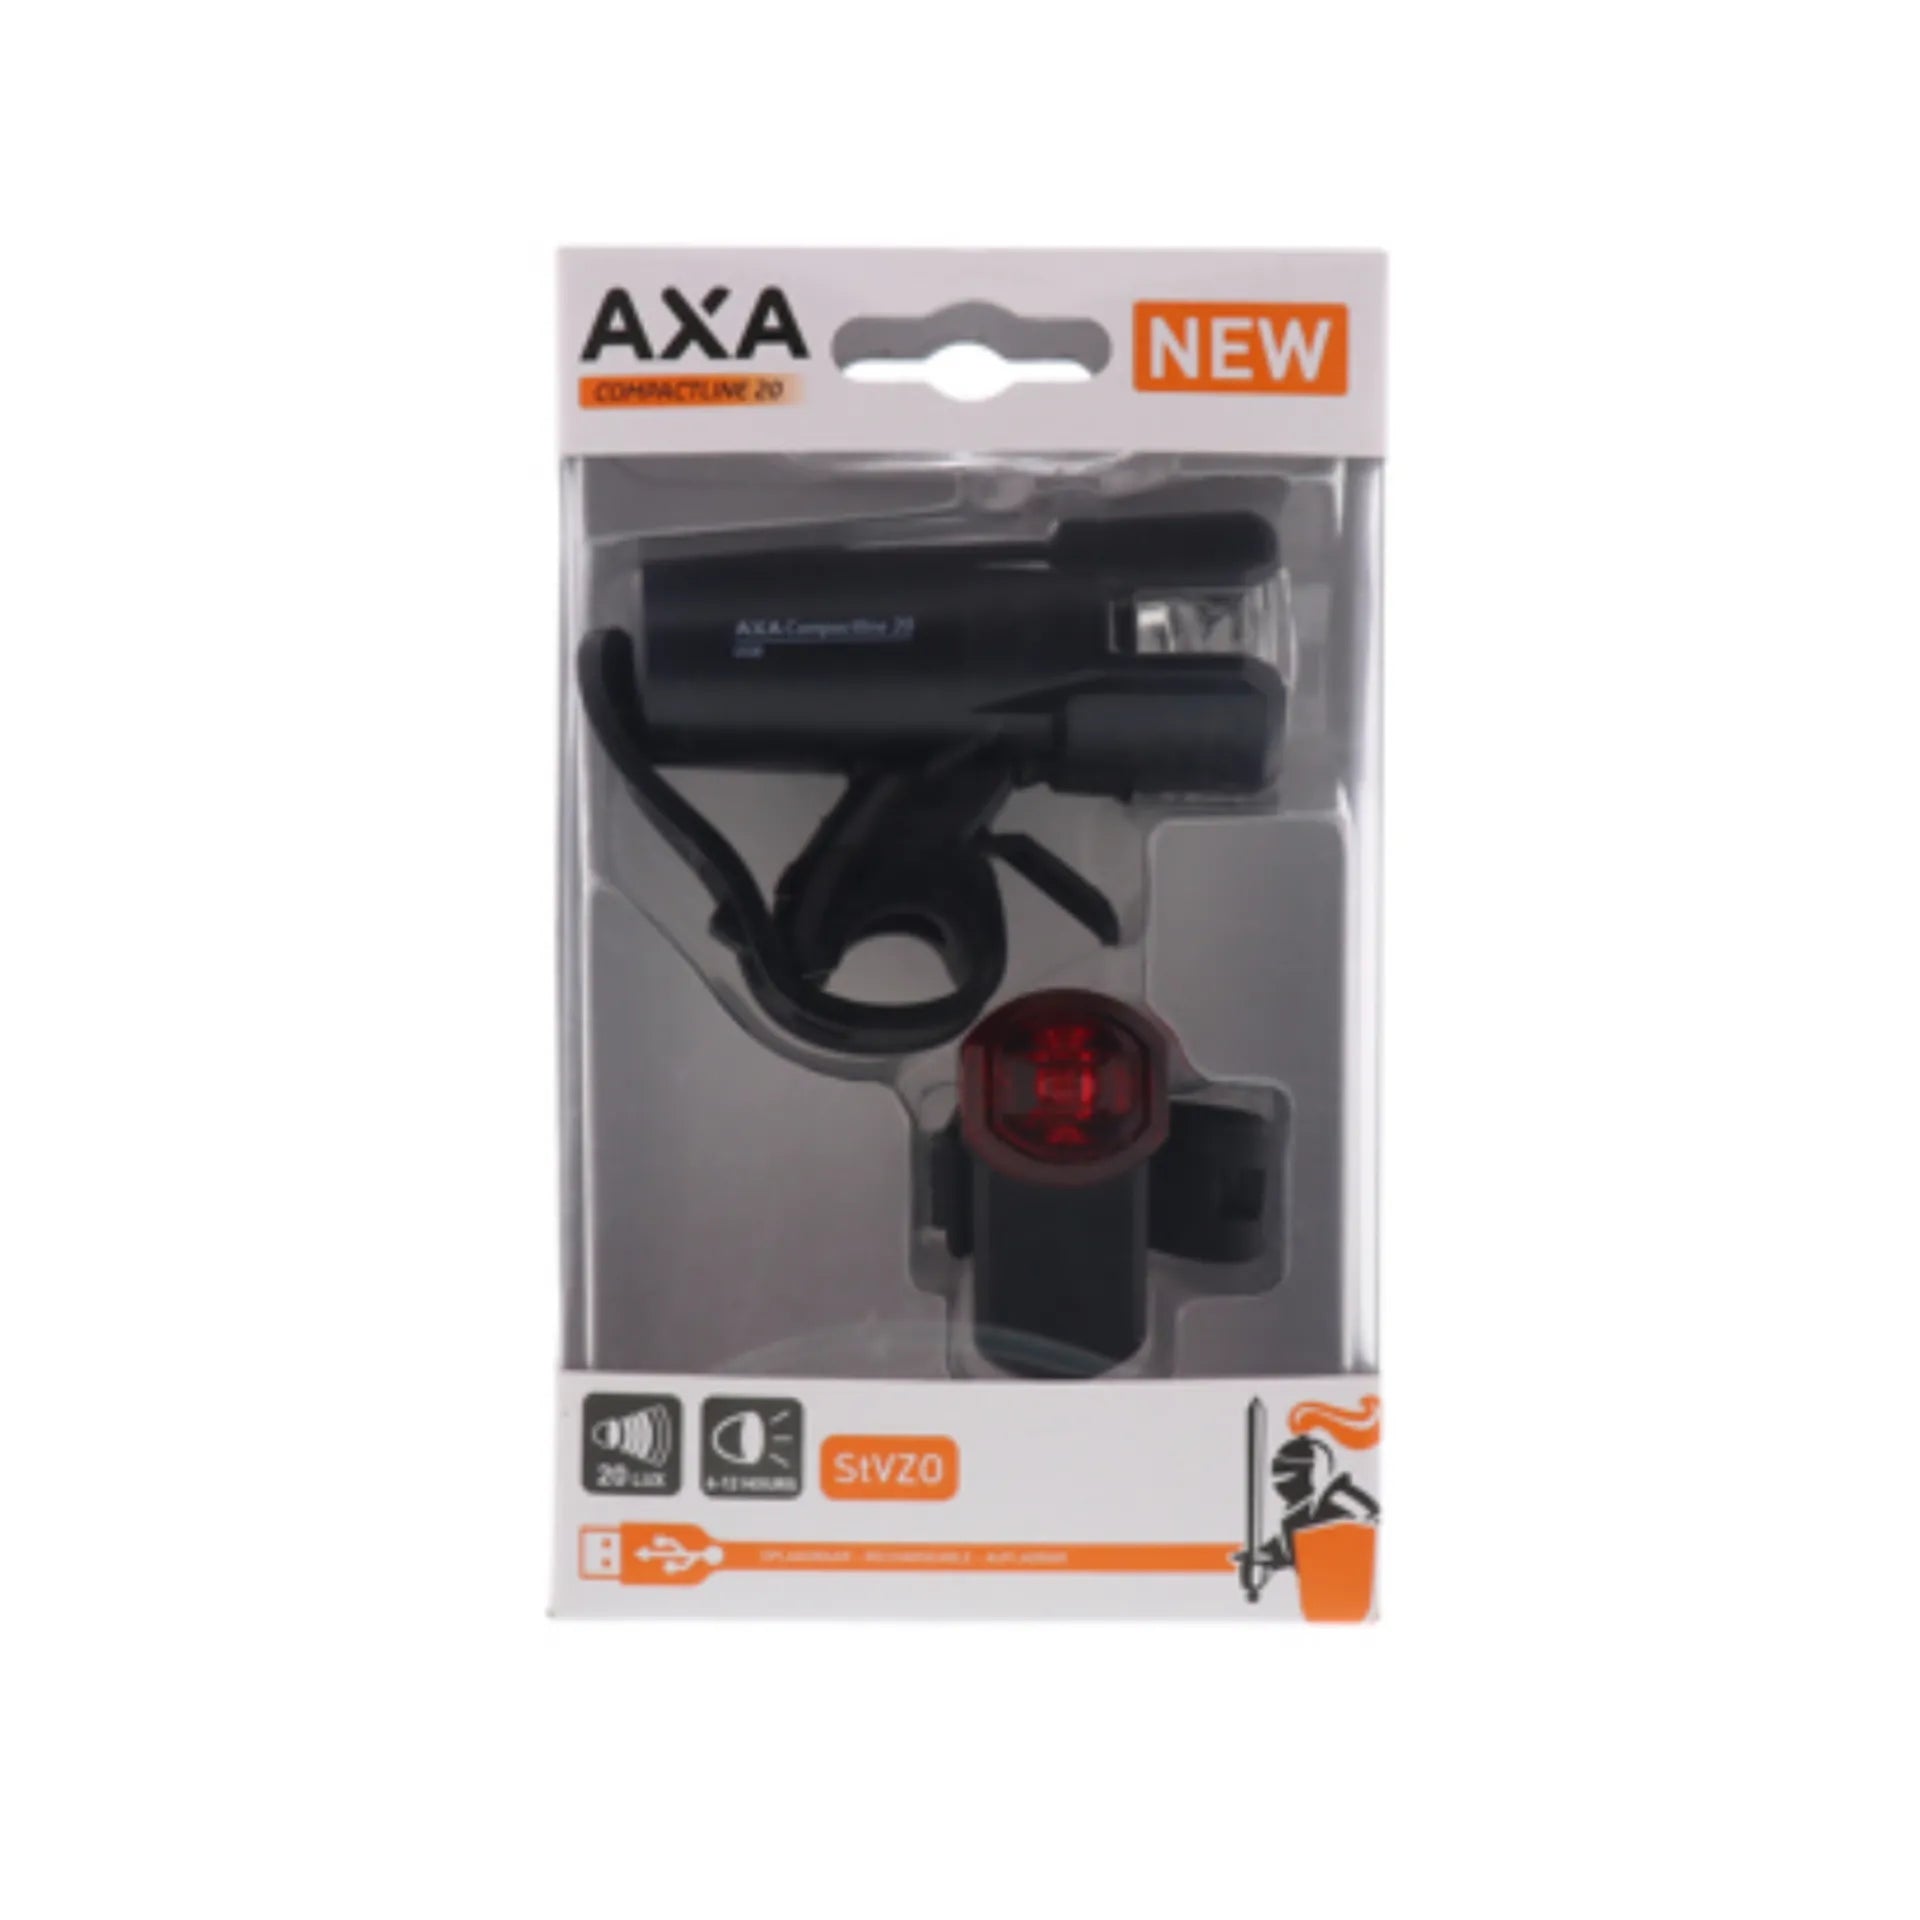 fiets verlichting - Axa Compactline 20 lux verlichtingsset Batterij